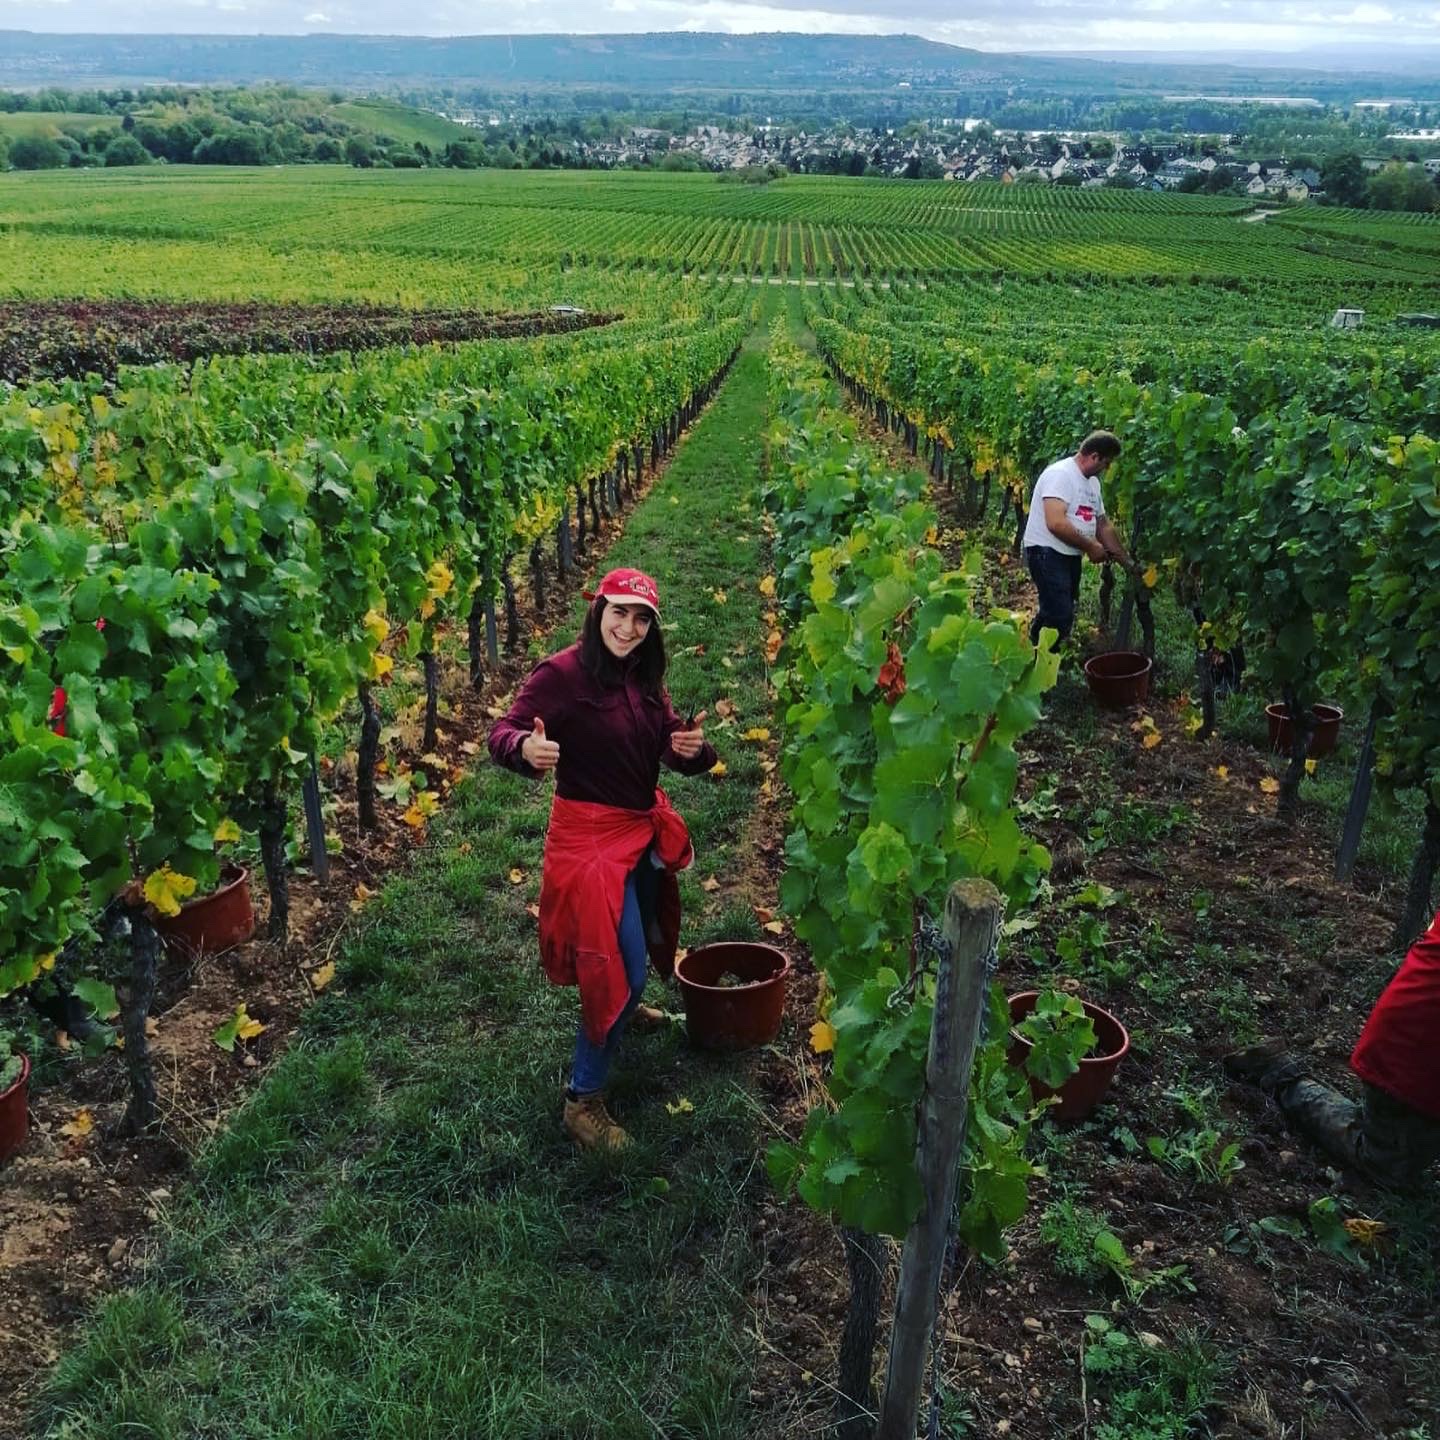 Elsa working in the vineyards of Wiesbaden